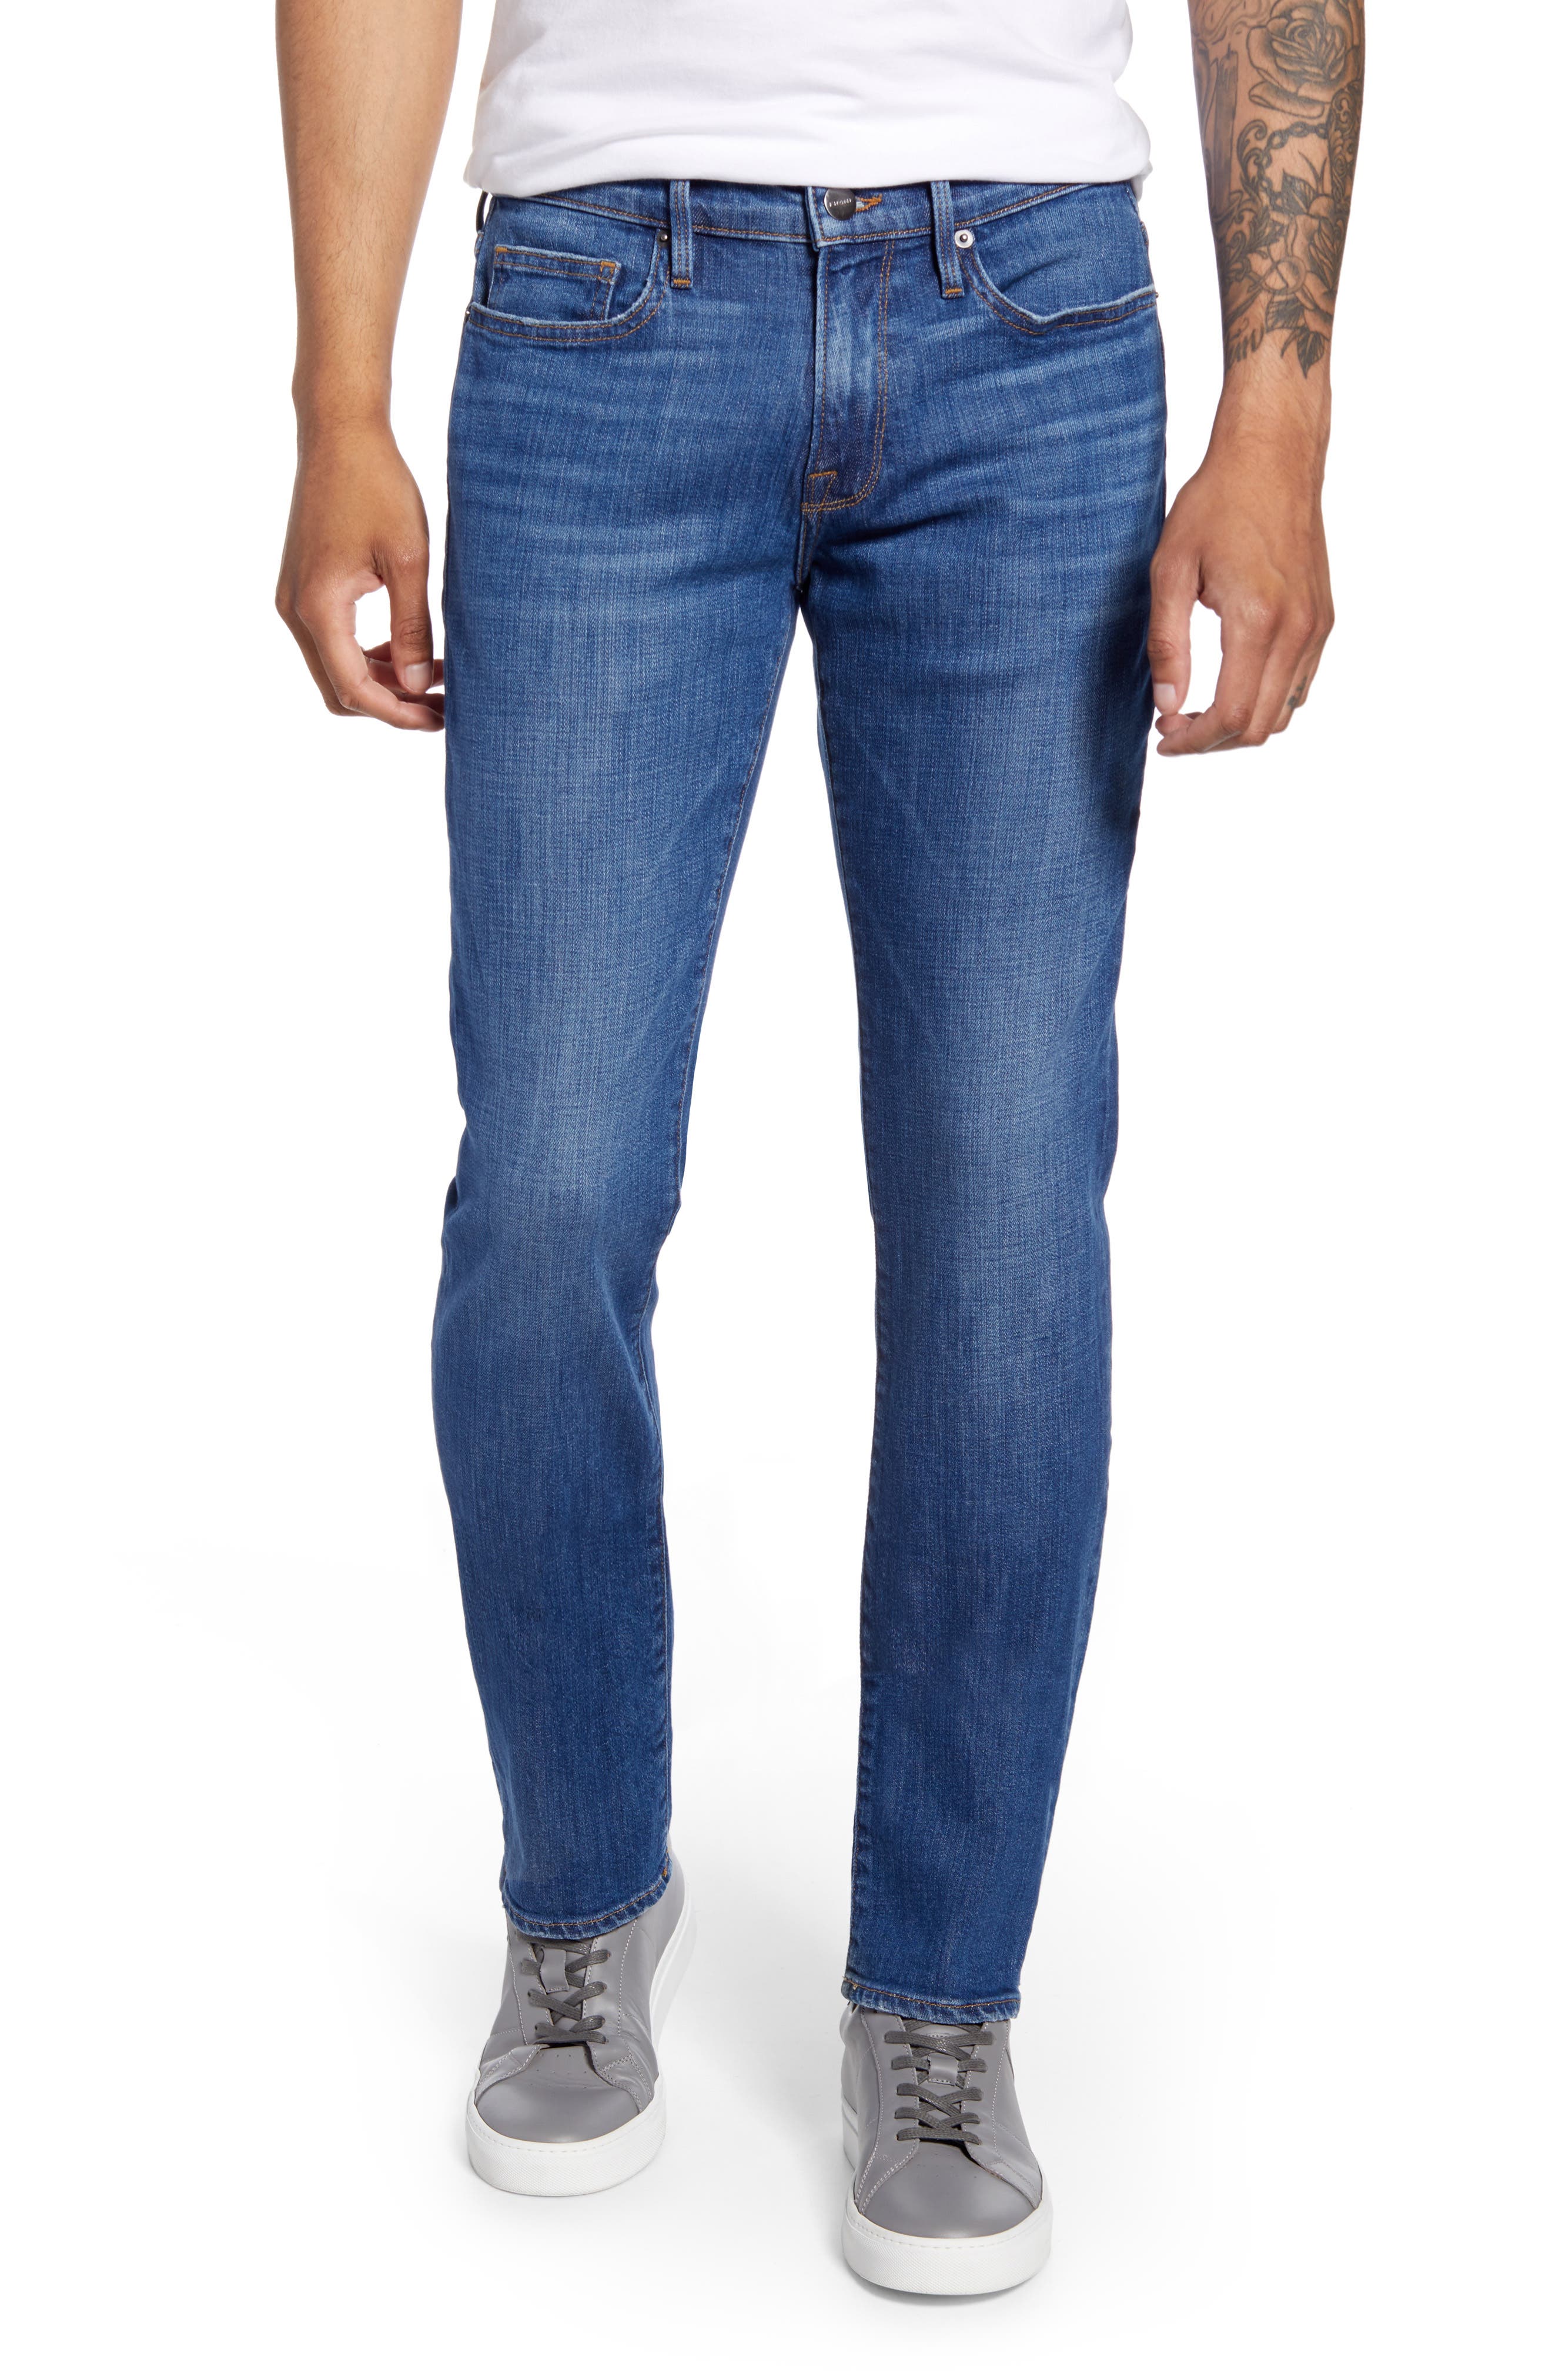 mens frame jeans sale